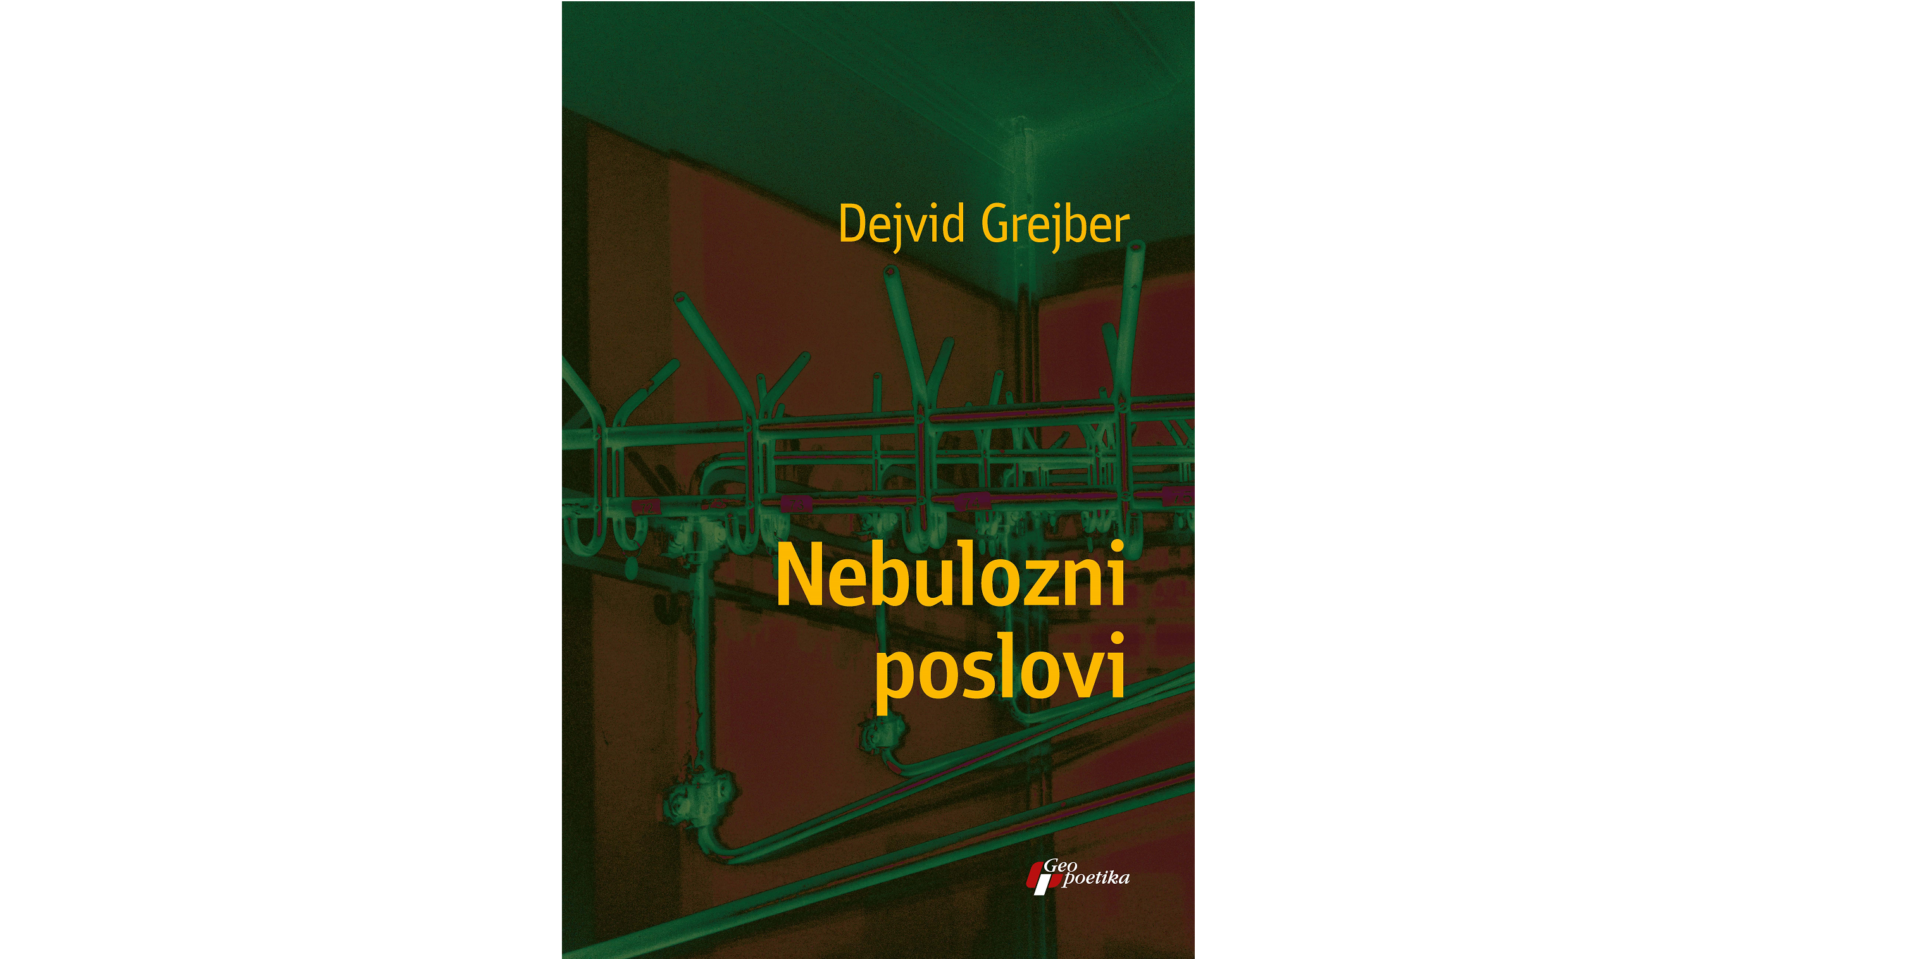 Prikaz knjige „Nebulozni poslovi“ Dejvida Grejbera: Mora neko i to da radi